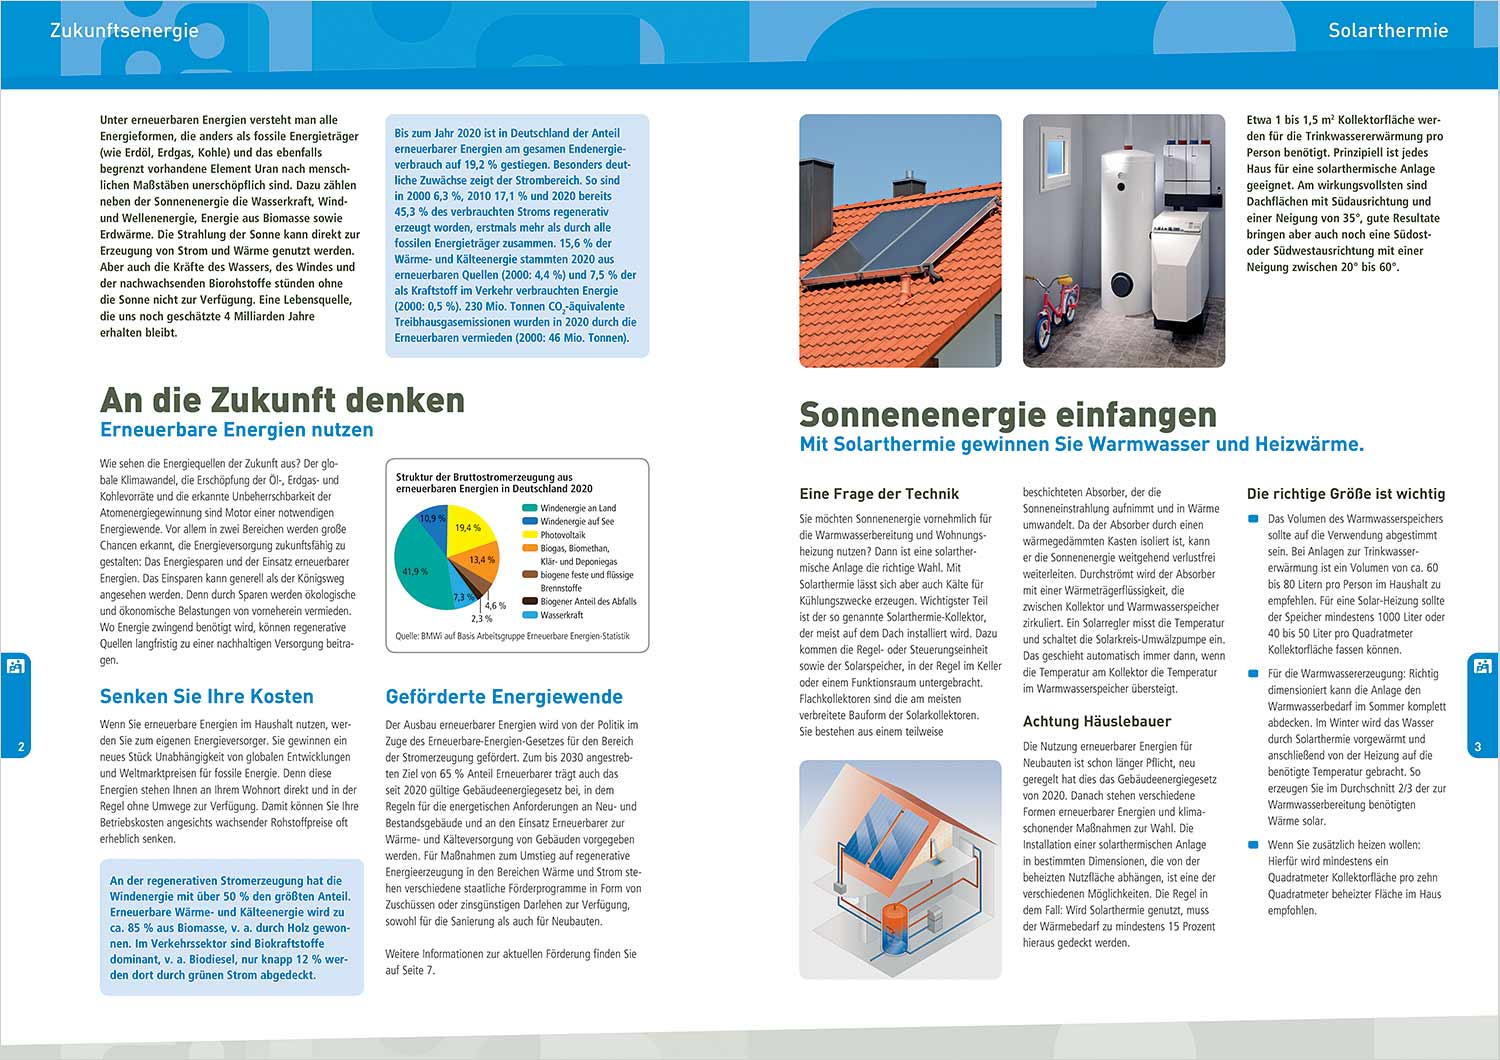 Erneuerbare Energien für den Haushalt: Seiten 2-3